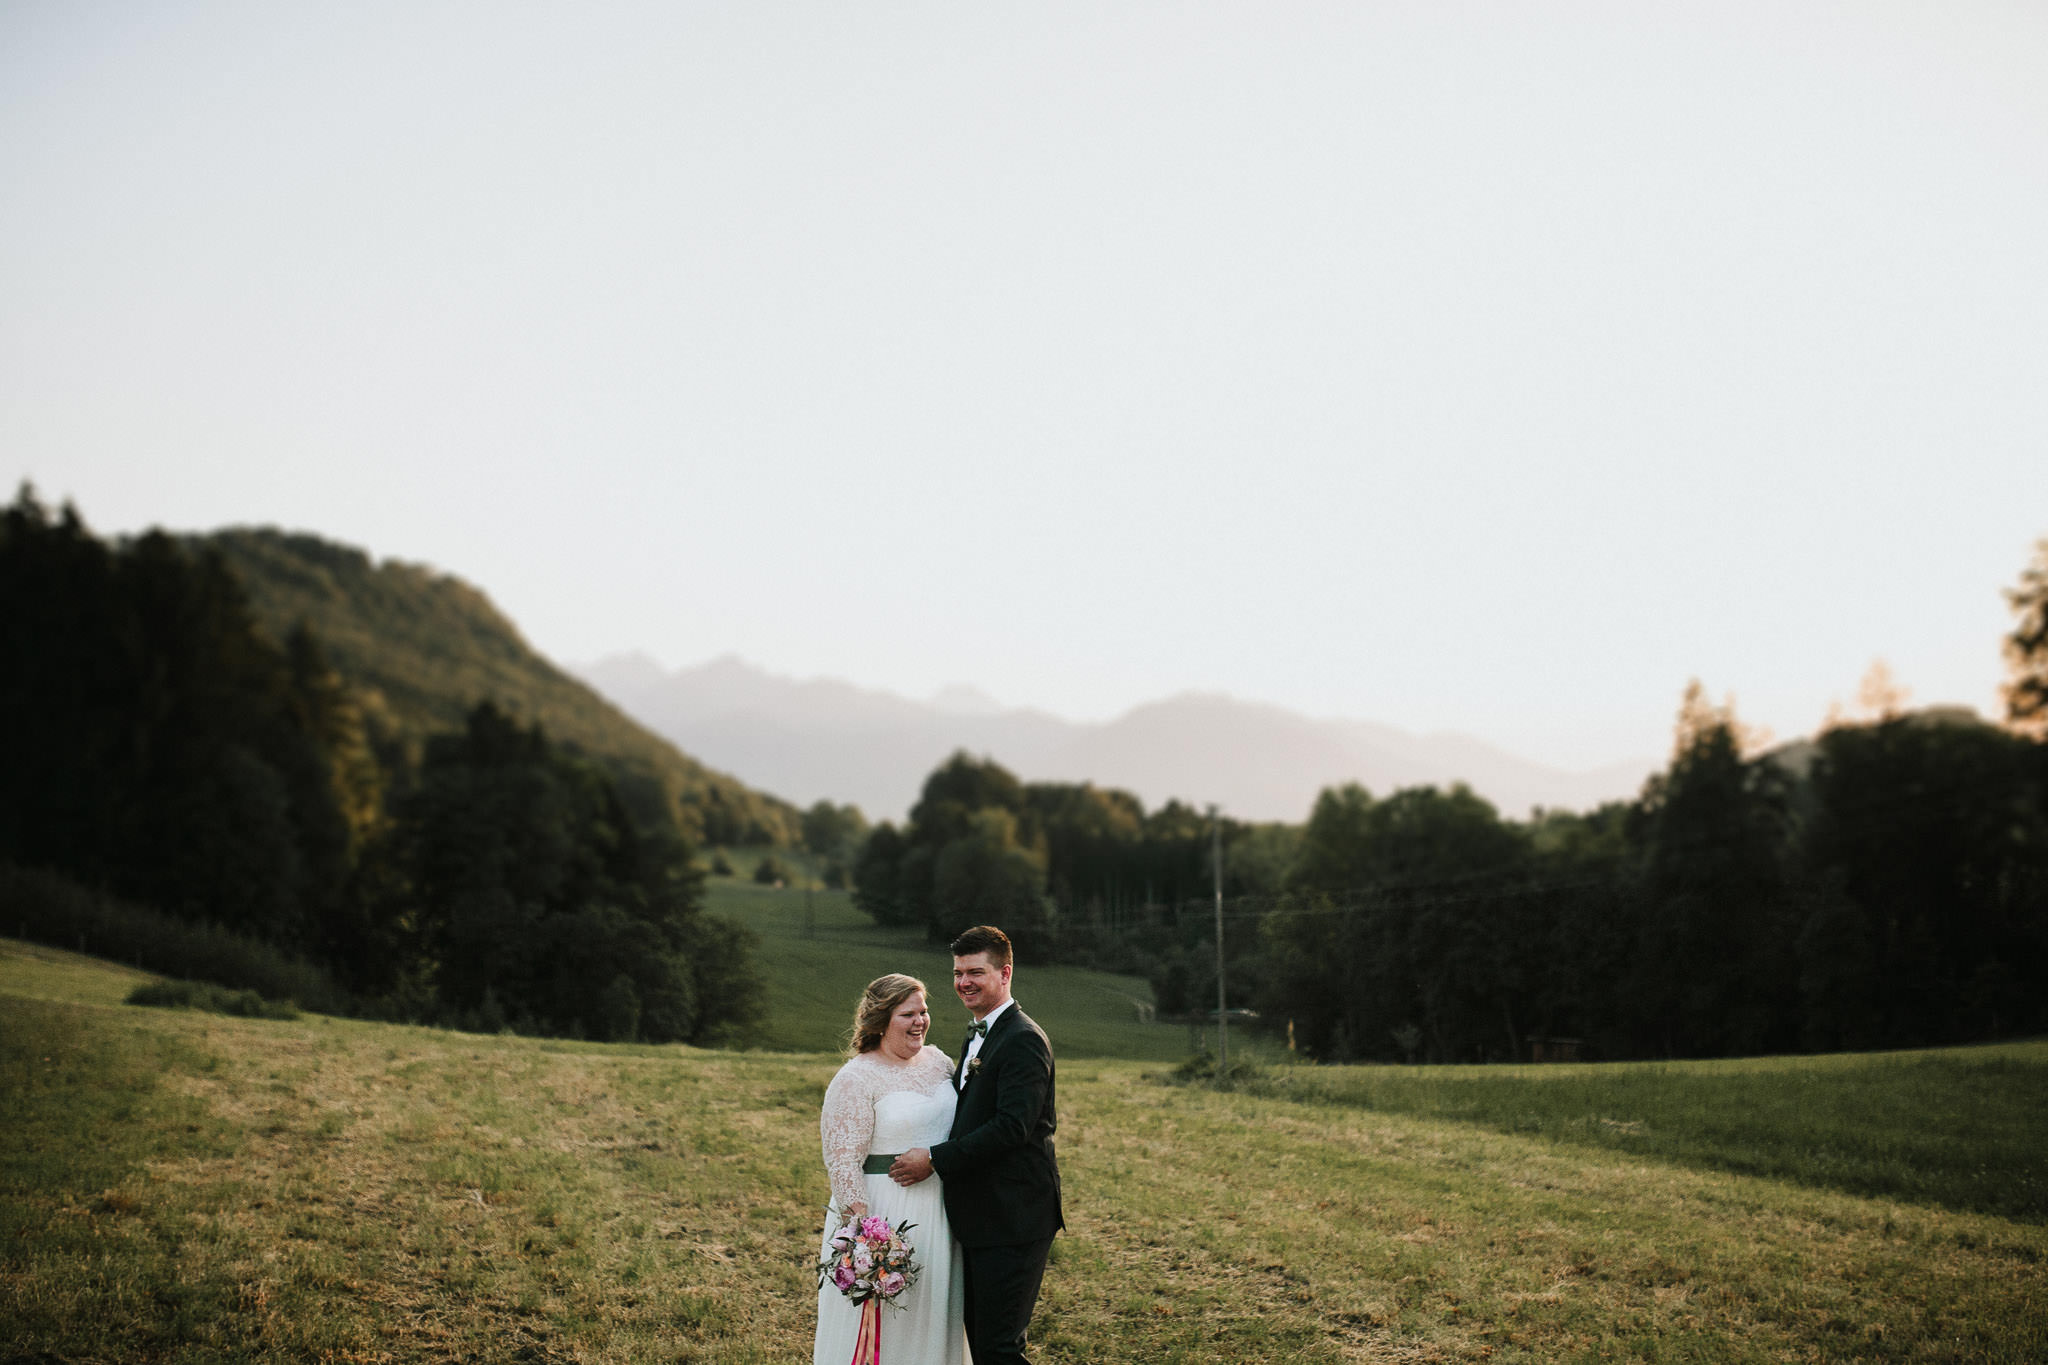 Sommerliche Hochzeit Moarhof Samerberg - Hochzeitsfotograf München Hoczeit in den Bergen